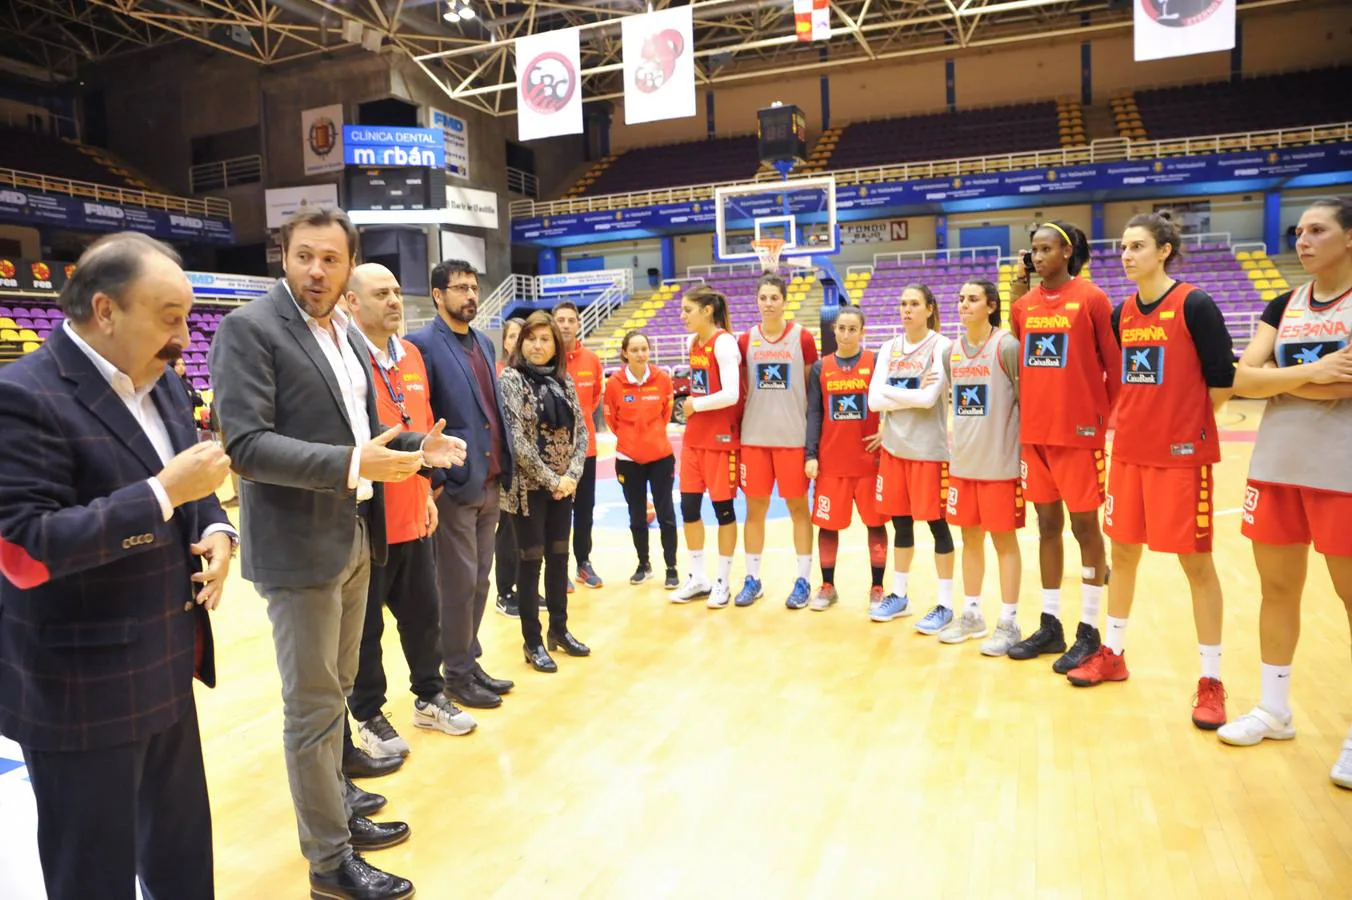 El equipo que dirige Lucas Mondelo se encuentra en la capital vallisoletana para medirse a Holanda en partido oficial clasificatorio para el Eurobasket 2019